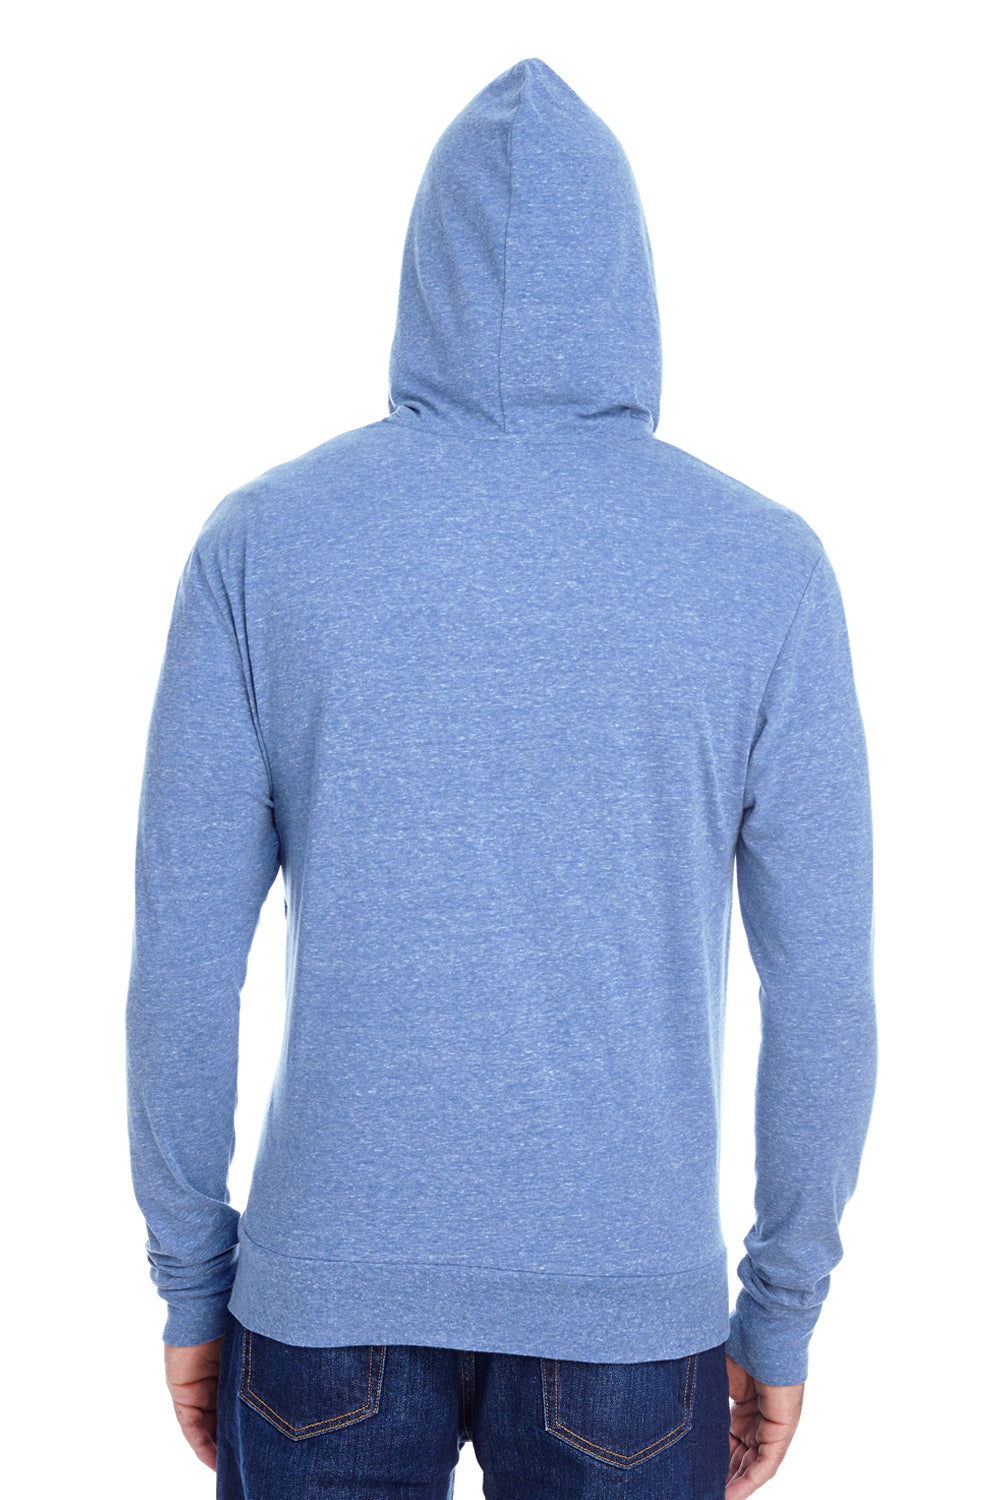 Threadfast Apparel 302Z Mens Full Zip Hooded Sweatshirt Hoodie Navy Blue Back